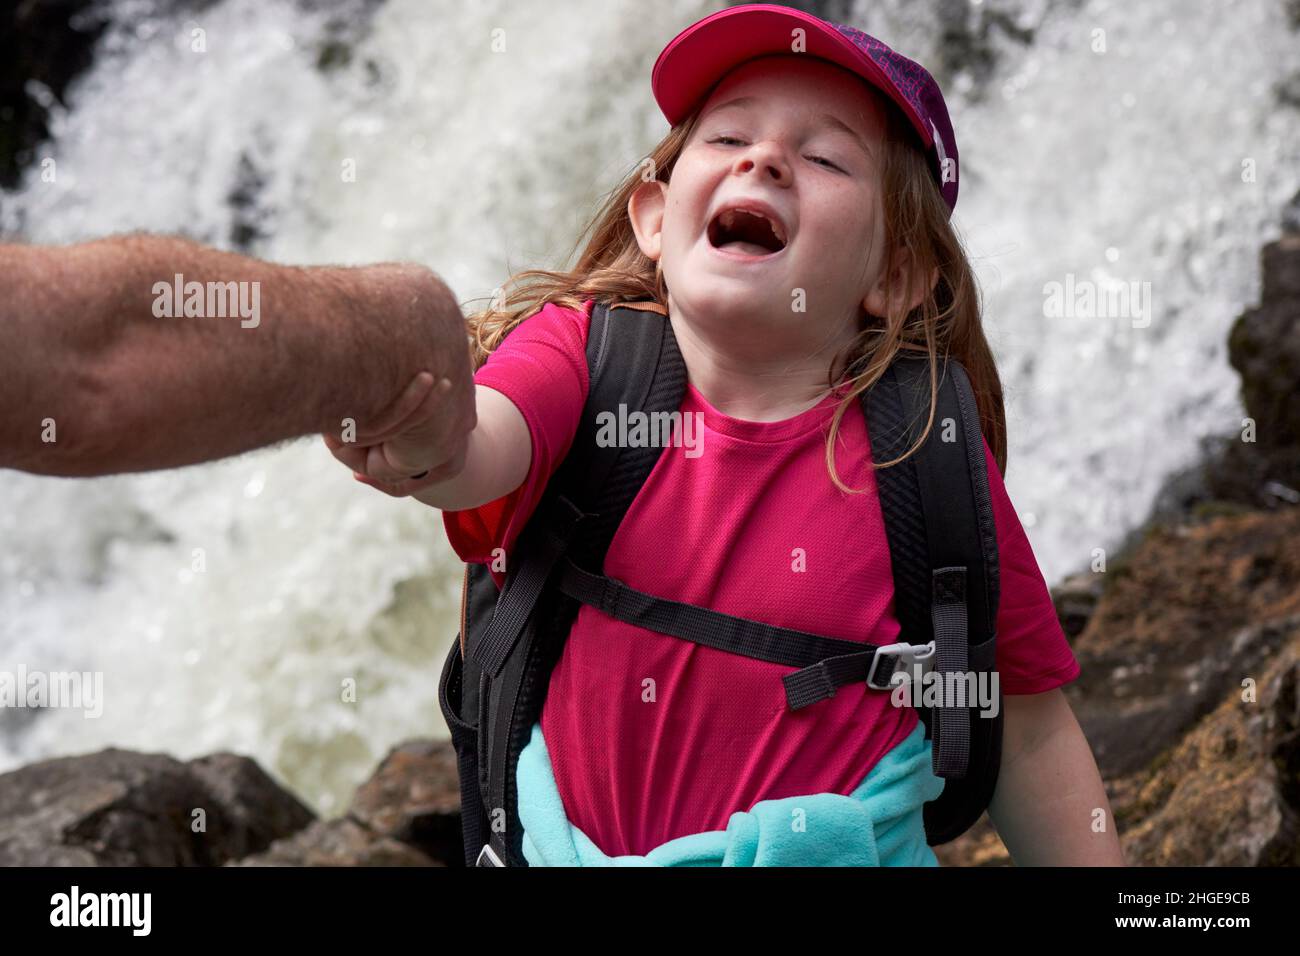 Das junge Mädchen, das vorgibt, in einen Wasserfall zu fallen, wird von ihrem Väter Arm Lake District, cumbria, england, großbritannien, gehalten Stockfoto